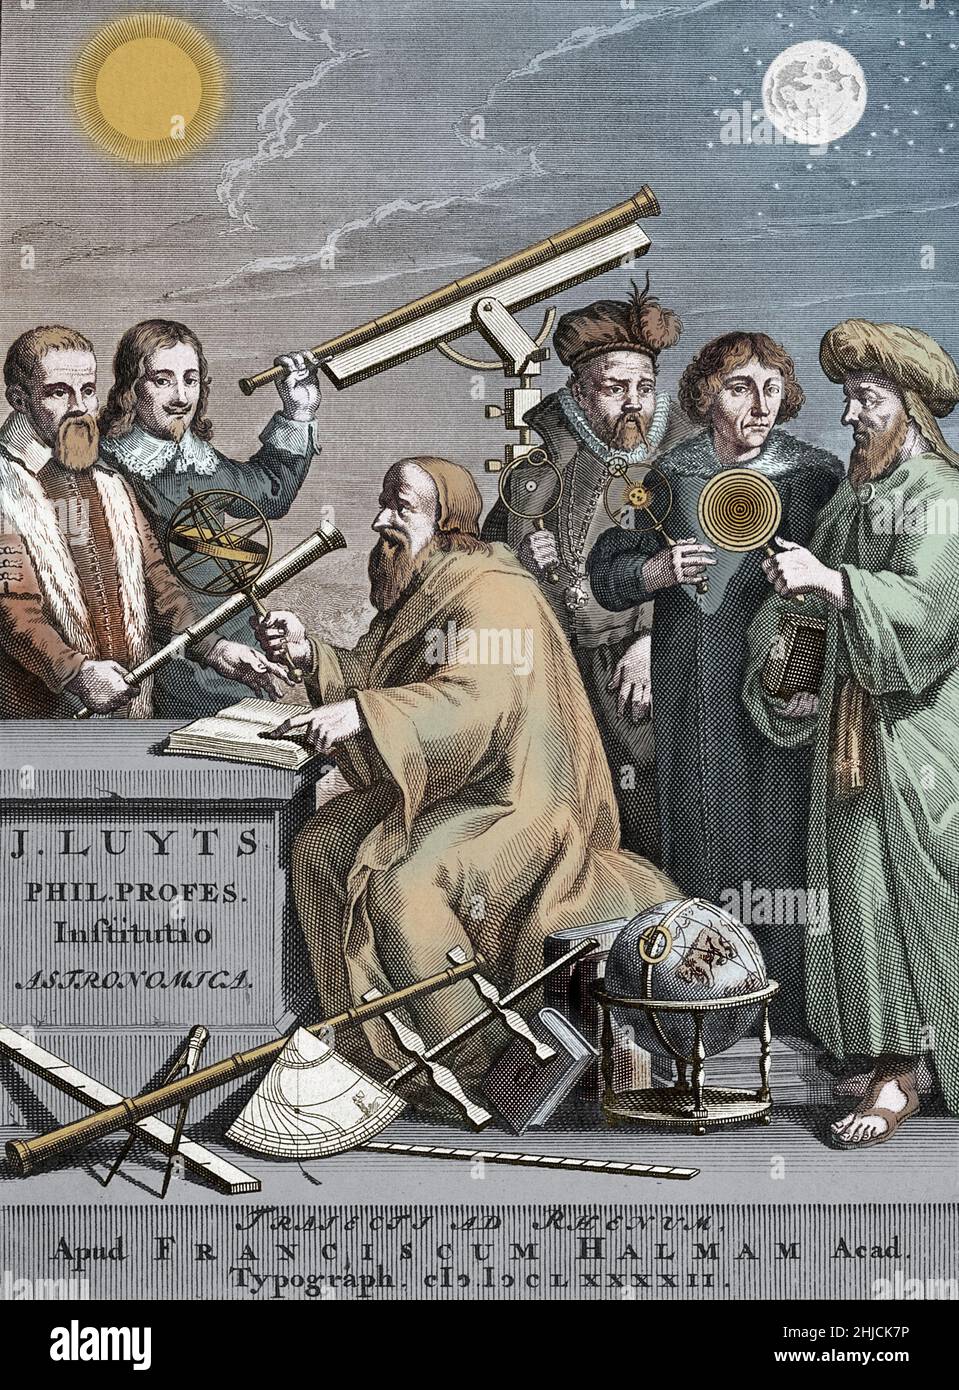 Berühmte Astronomen der Geschichte, eine Farbgebung eines Frontispiz-Stichs von Jan Luyts‚Äôs Astronomica Institutio, 1692. Die Figur in der Mitte kann der antike griechische Astronom Hipparchus oder eine Figur von Luyts selbst sein. Im Hintergrund von links nach rechts: Galileo Galilei (1564-1642), Johannes Hevelius (1611-1687), Tycho Brahe (1546-1601), Nicolaus Copernicus (1473-1543) und Ptolemäus (100-c.‚Äâ170). Frontispiz-Stich von J. Mulder nach G. Hoet, von Jan Luyts‚Äôs Astronomica Institutio, 1692. Stockfoto